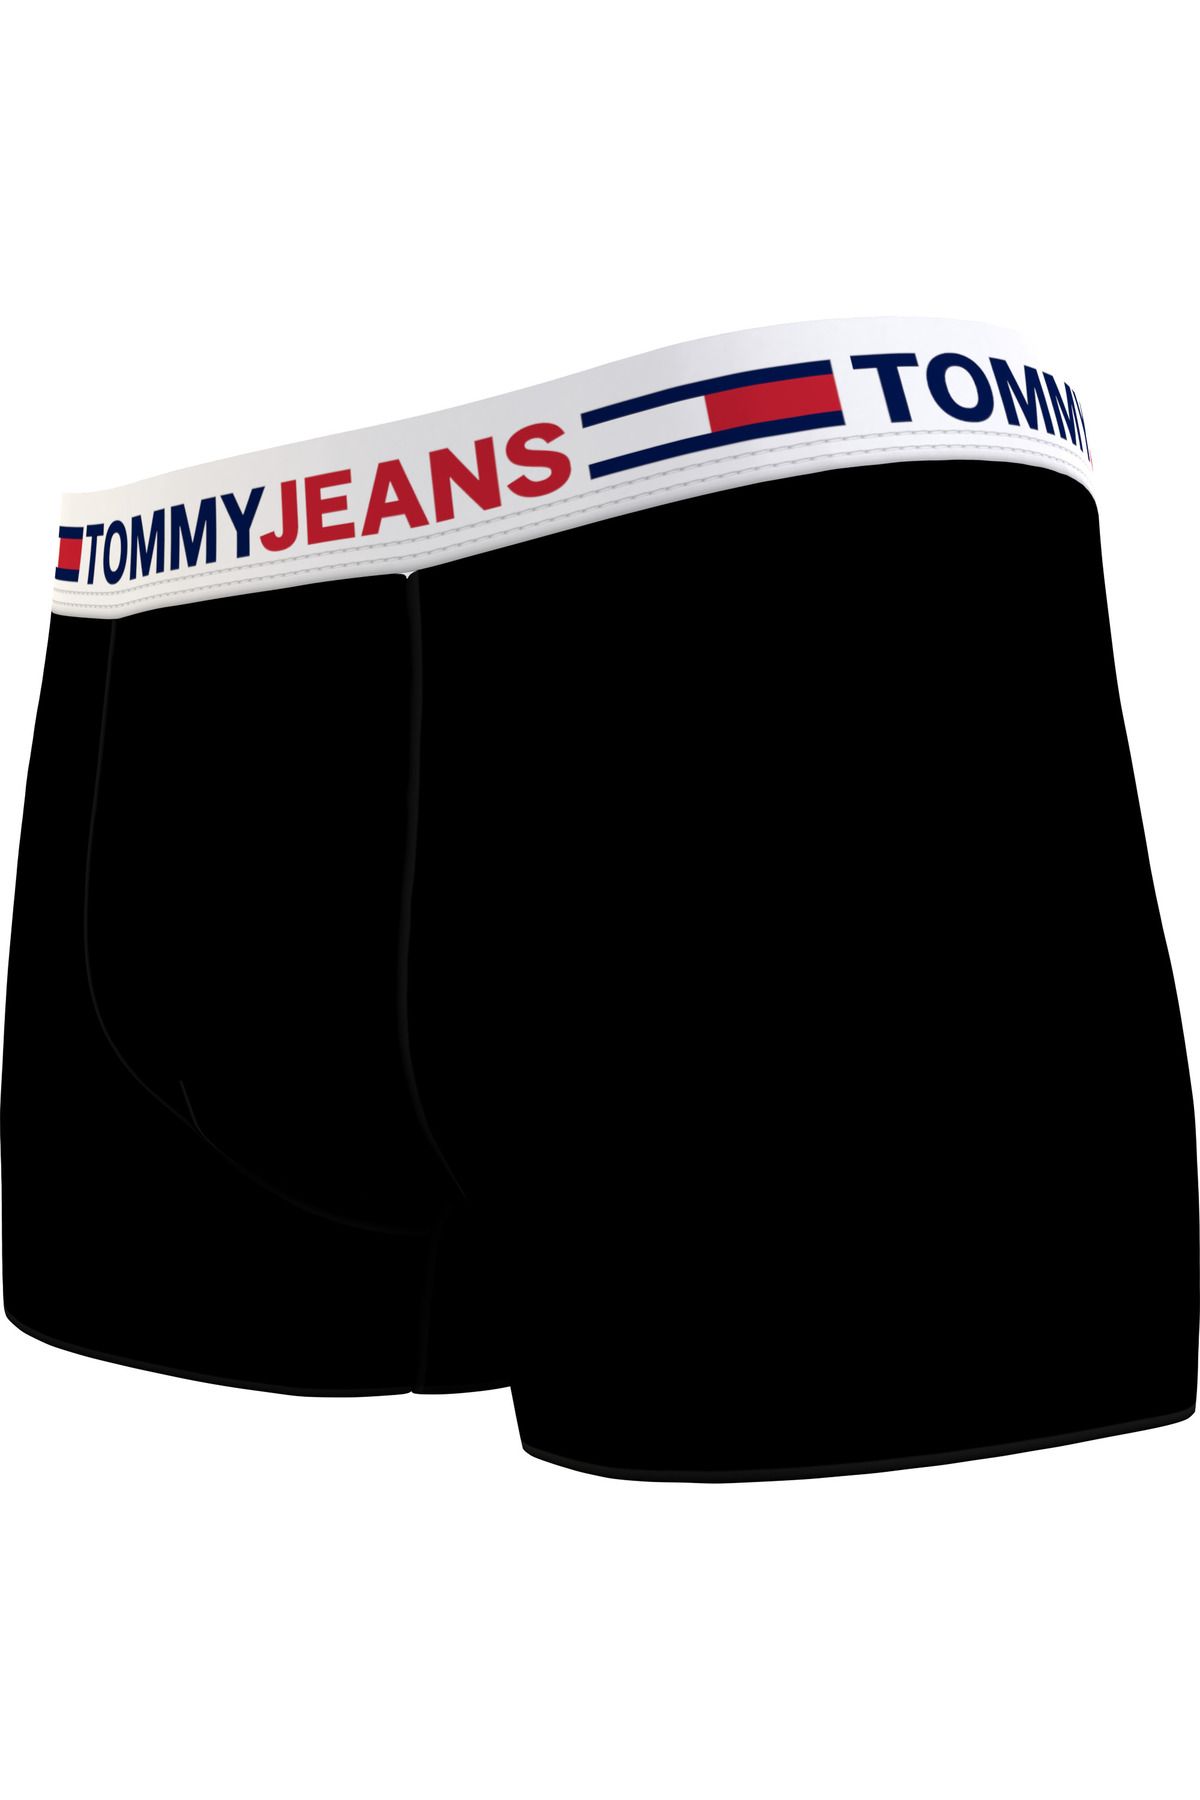 Tommy Hilfiger Erkek Siyah Boxer Fiyatı, Yorumları - Trendyol